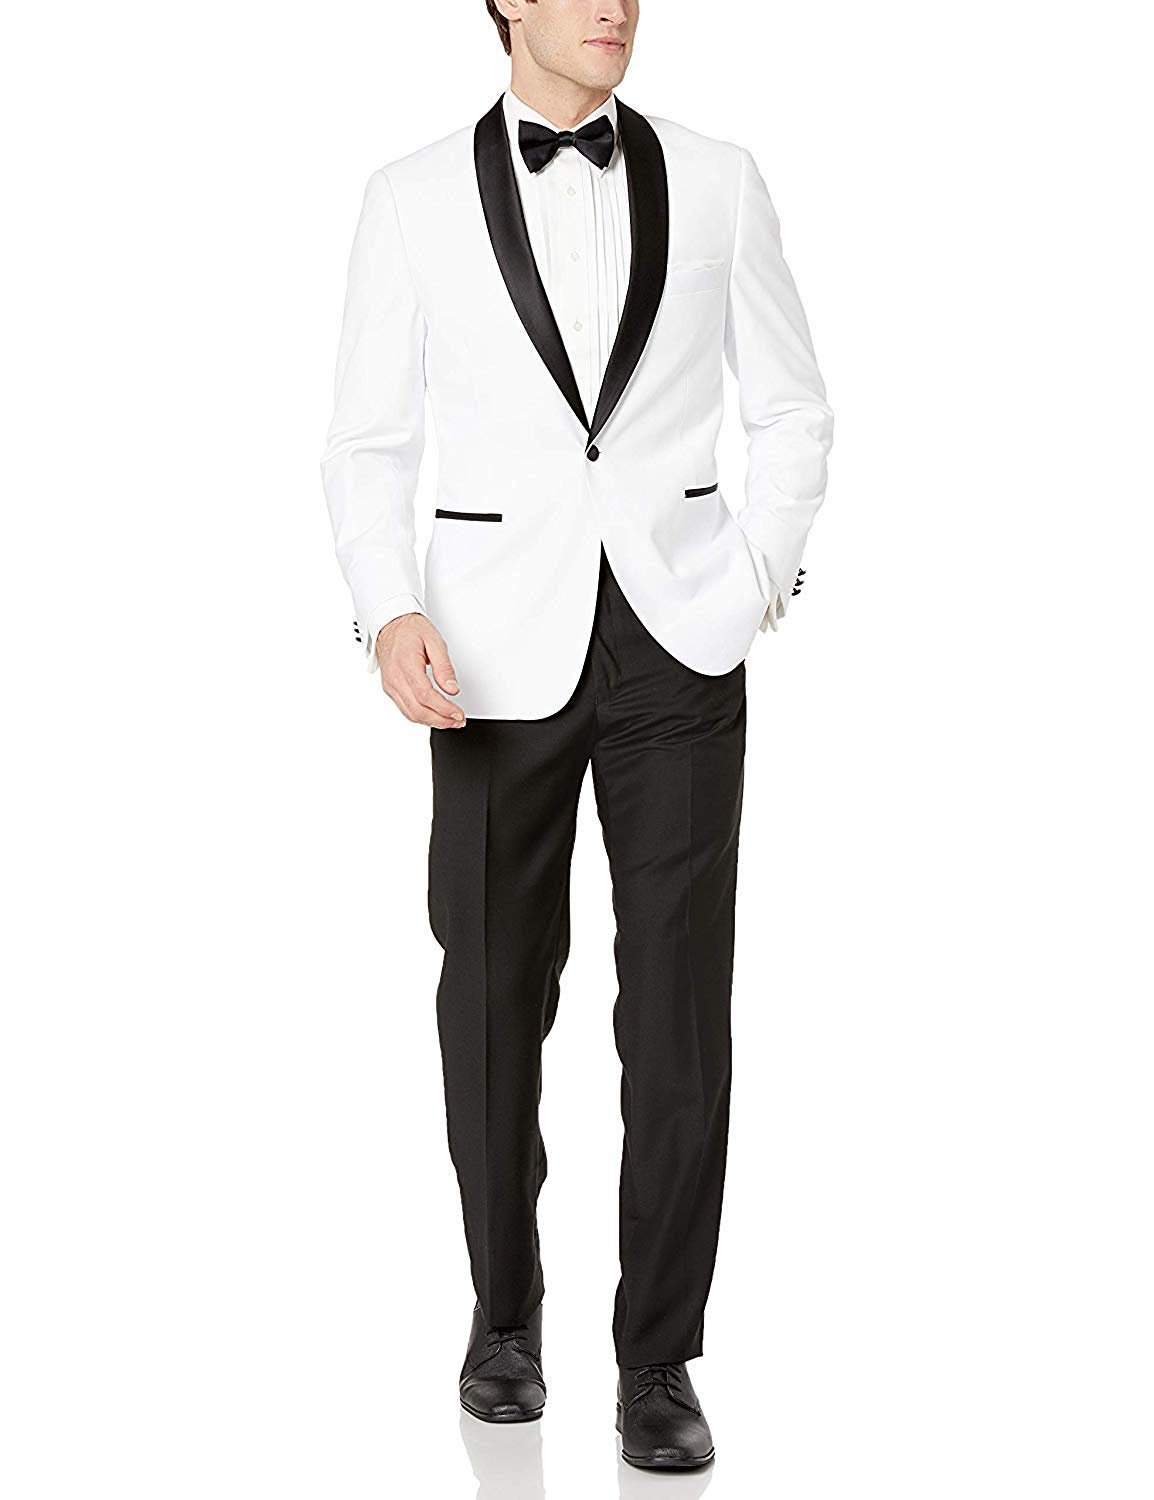 Adam Baker Bello BL301-8 Men's Slim Fit Shawl Collared Tuxedo - White - 50L - image 1 of 5